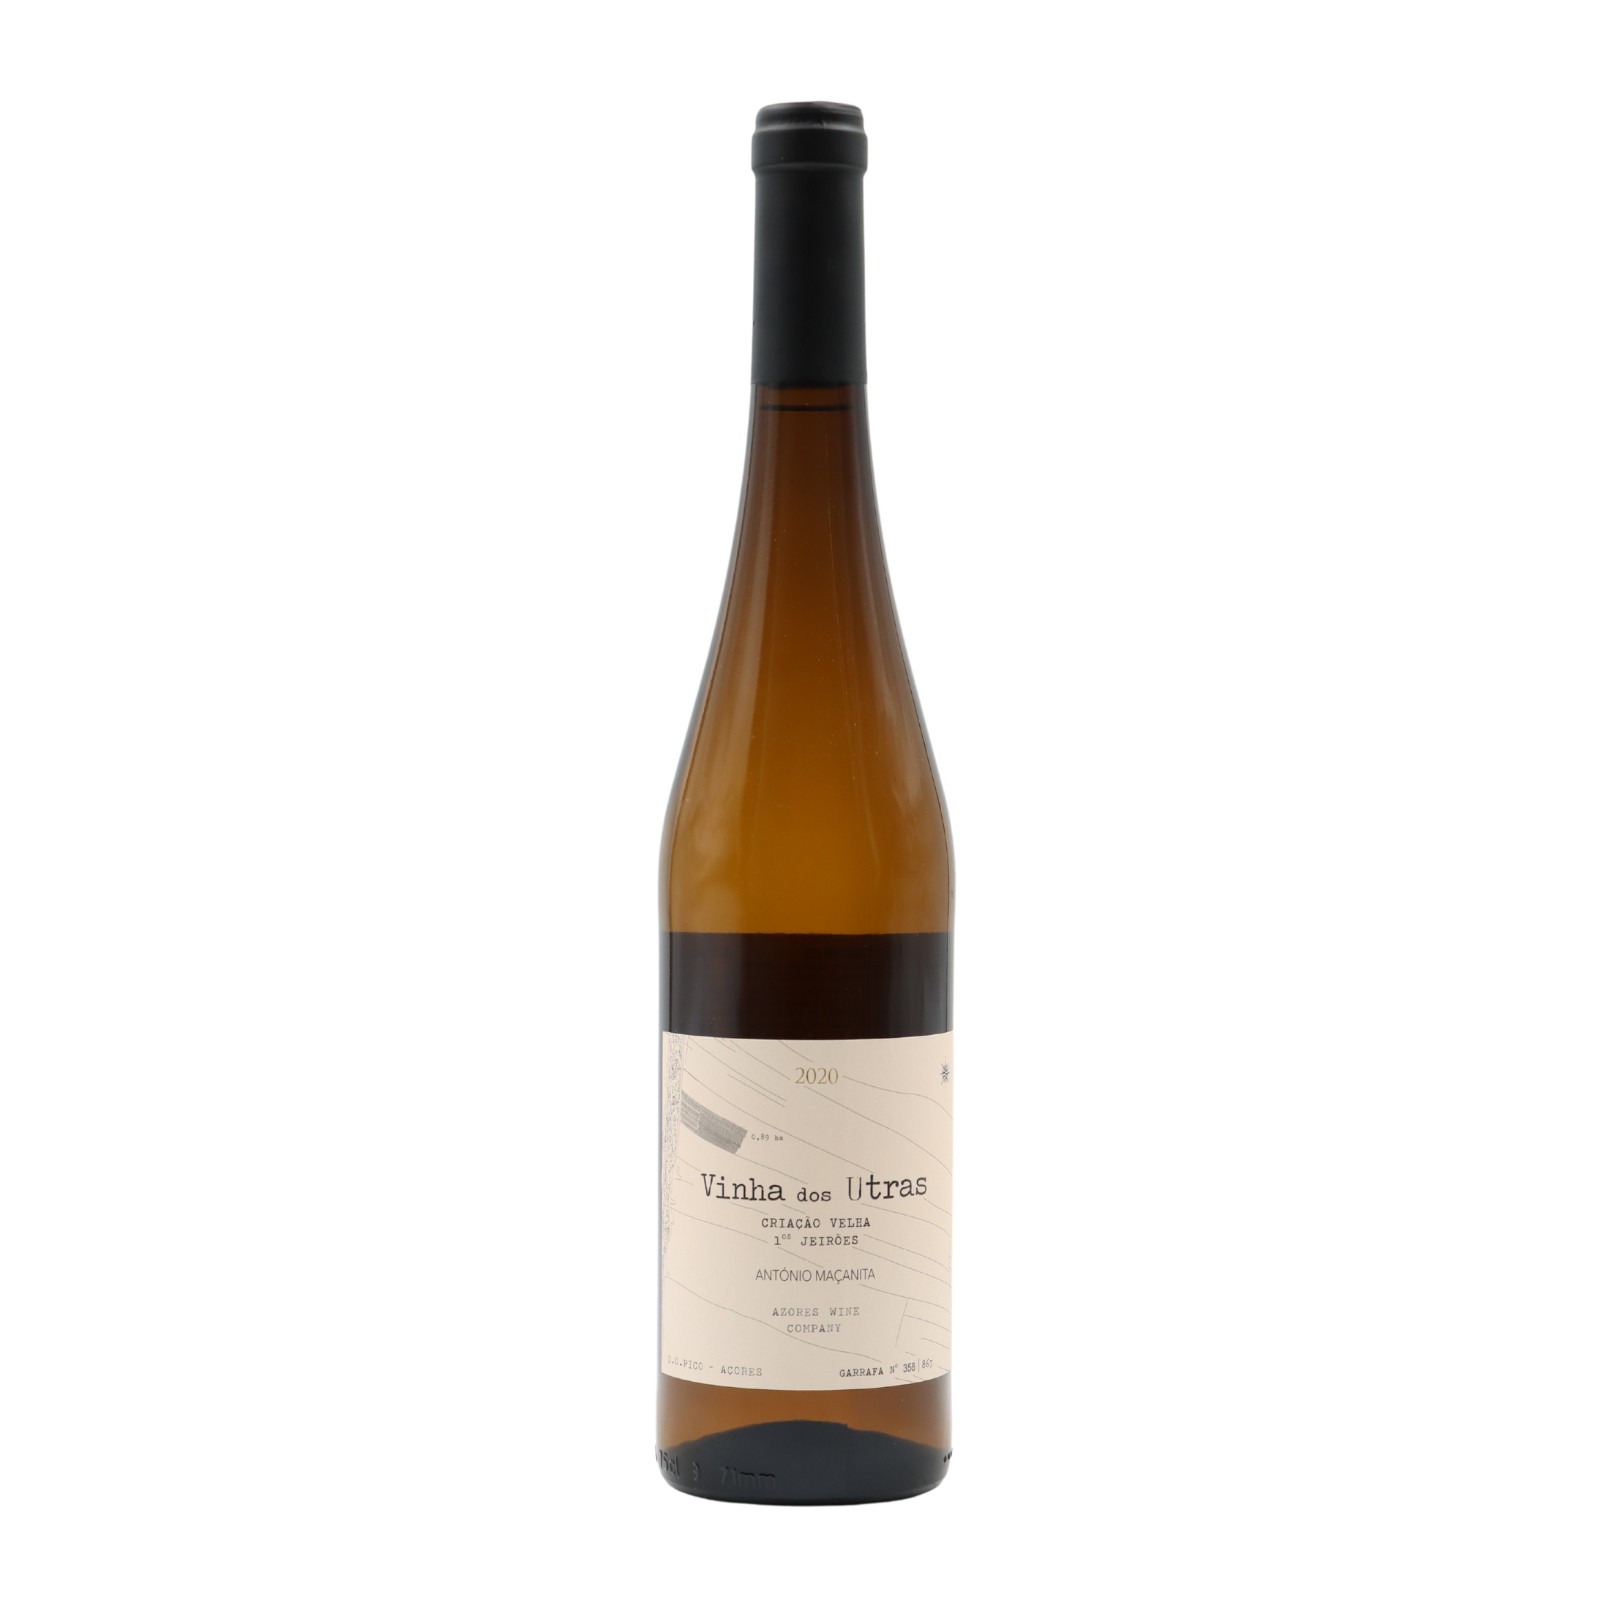 Azores Wine Company Vinha dos Utras Blanc 2020